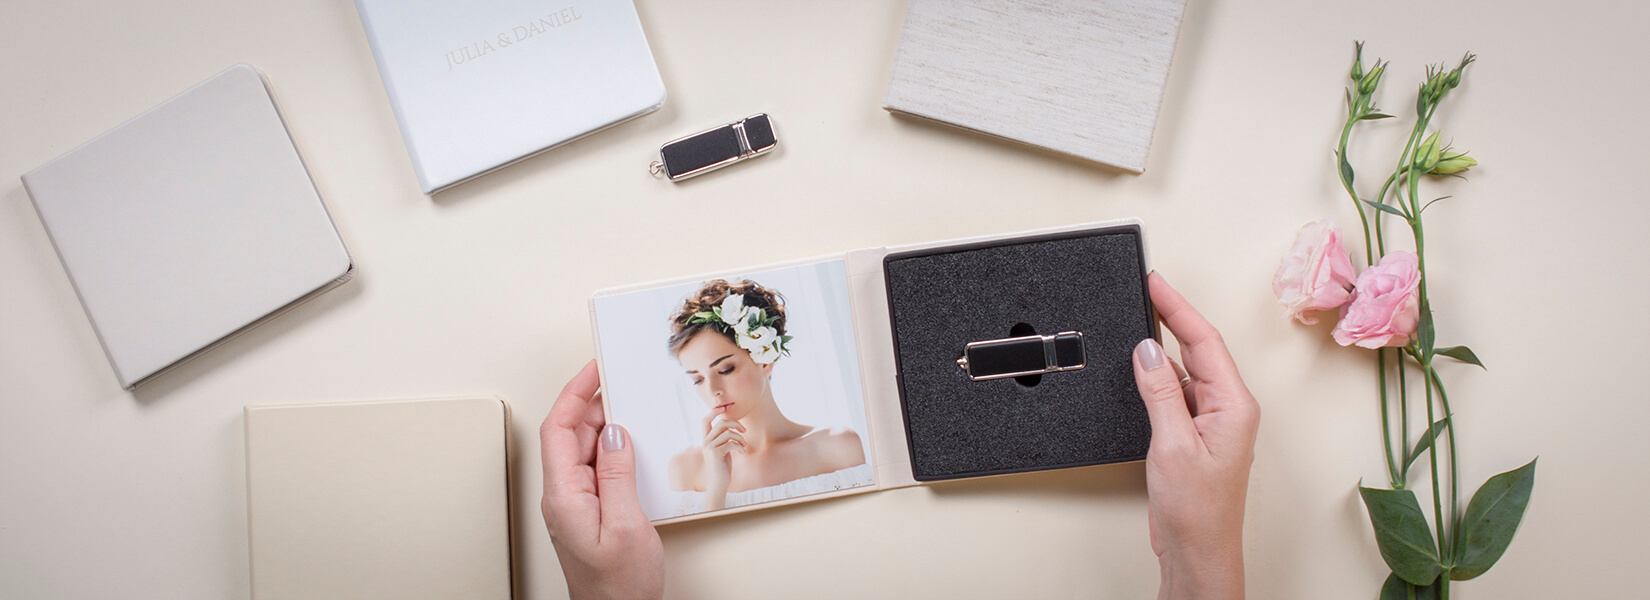 Box für USB Stick professionelle Fotografen Aufbewahrung hochwertige Fotoprodukte Personanlisierungen Acrylglas nPhoto 